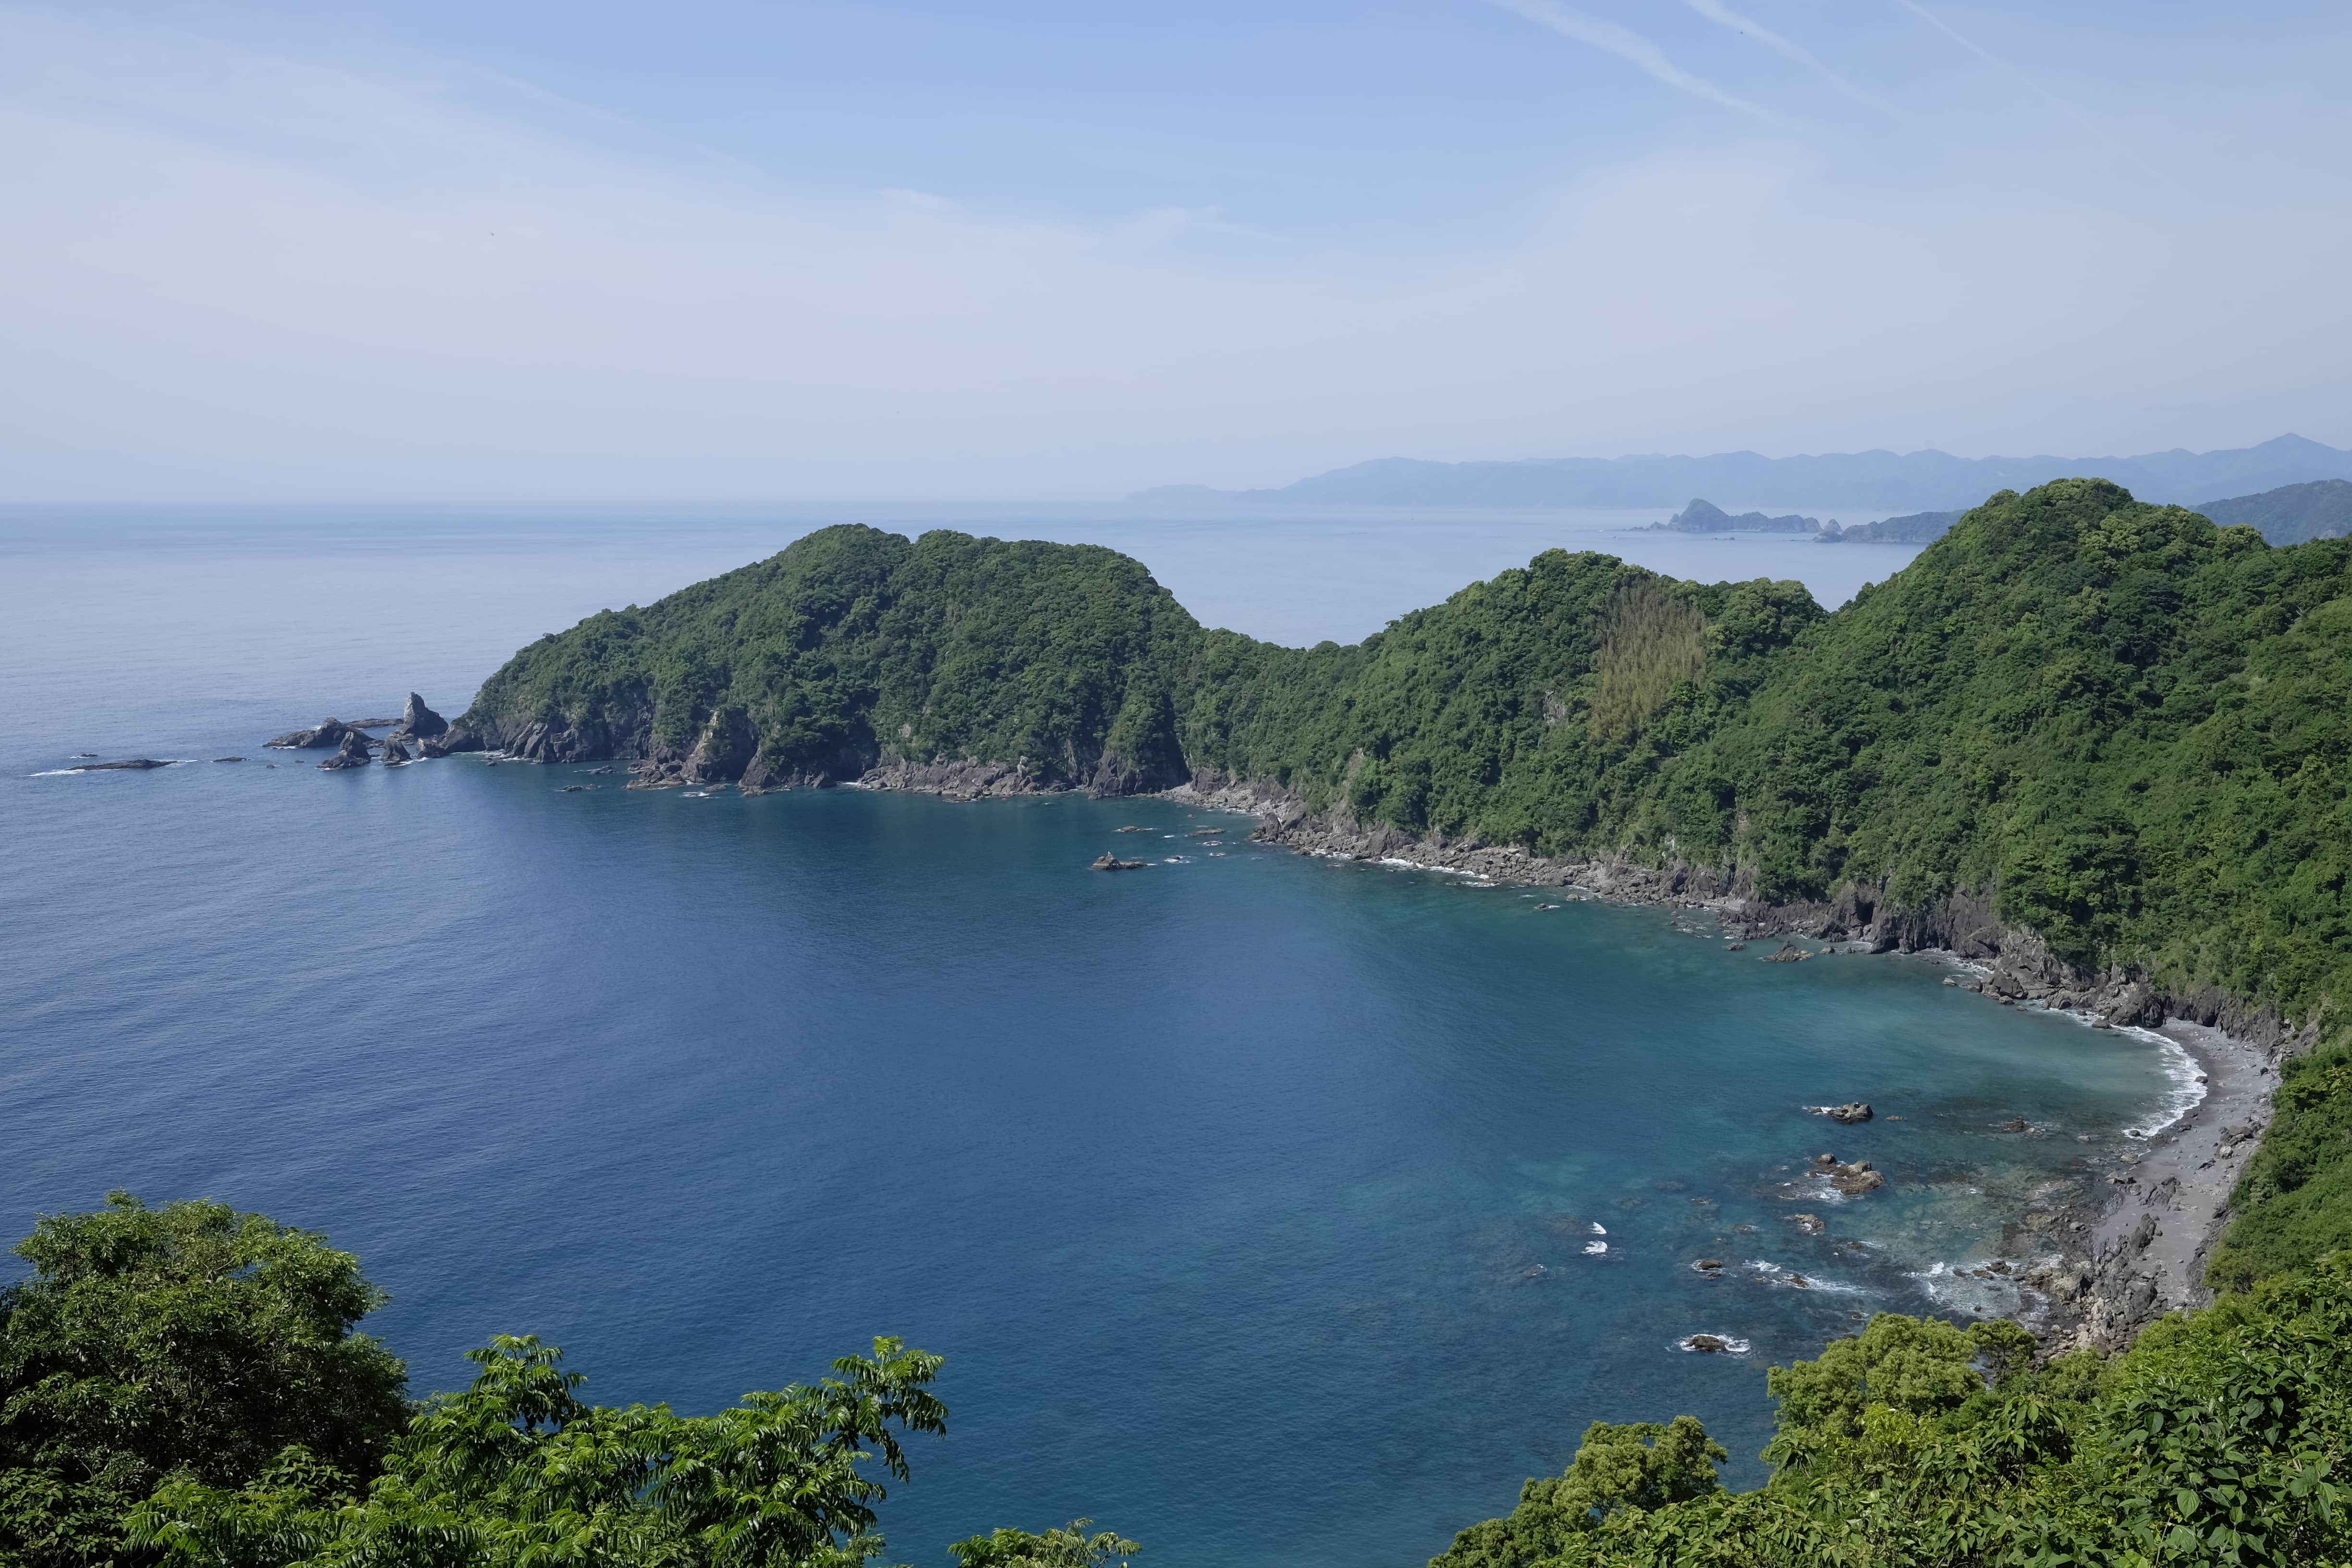 Day 20: Yokonami Peninsula